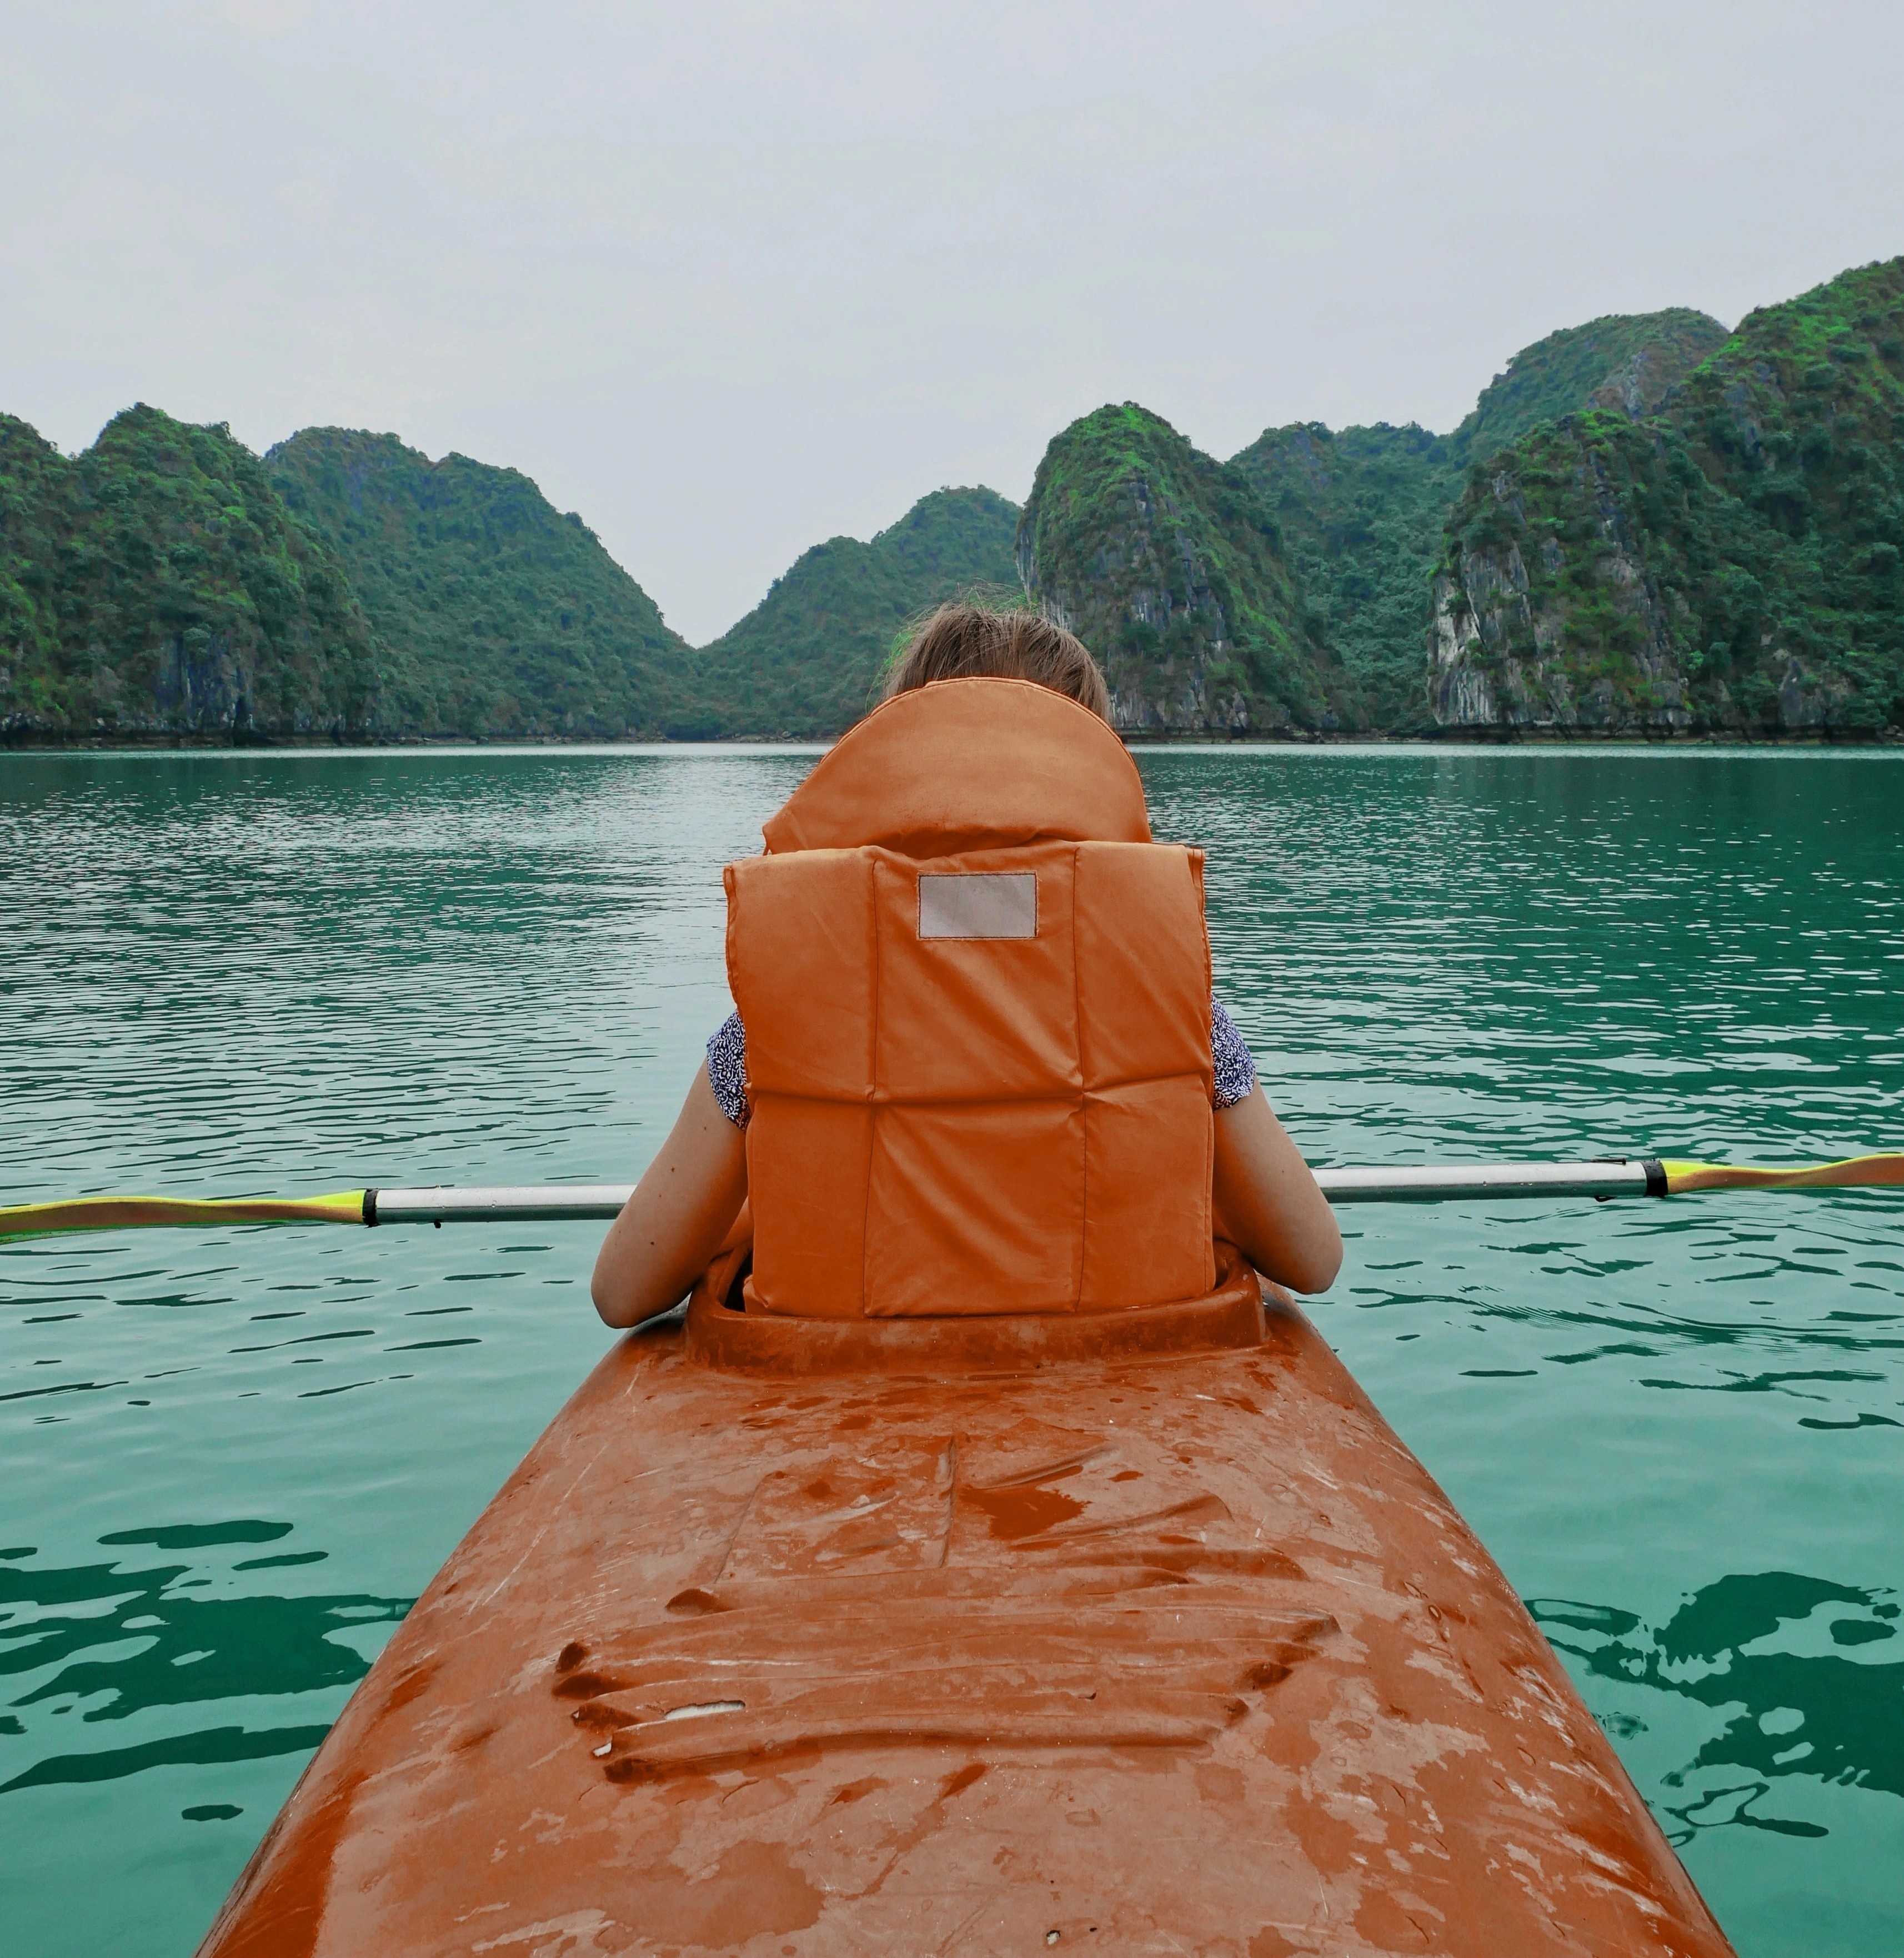 Tạp chí nước ngoài gợi ý 10 trải nghiệm nên thử ở Việt Nam - ảnh 4